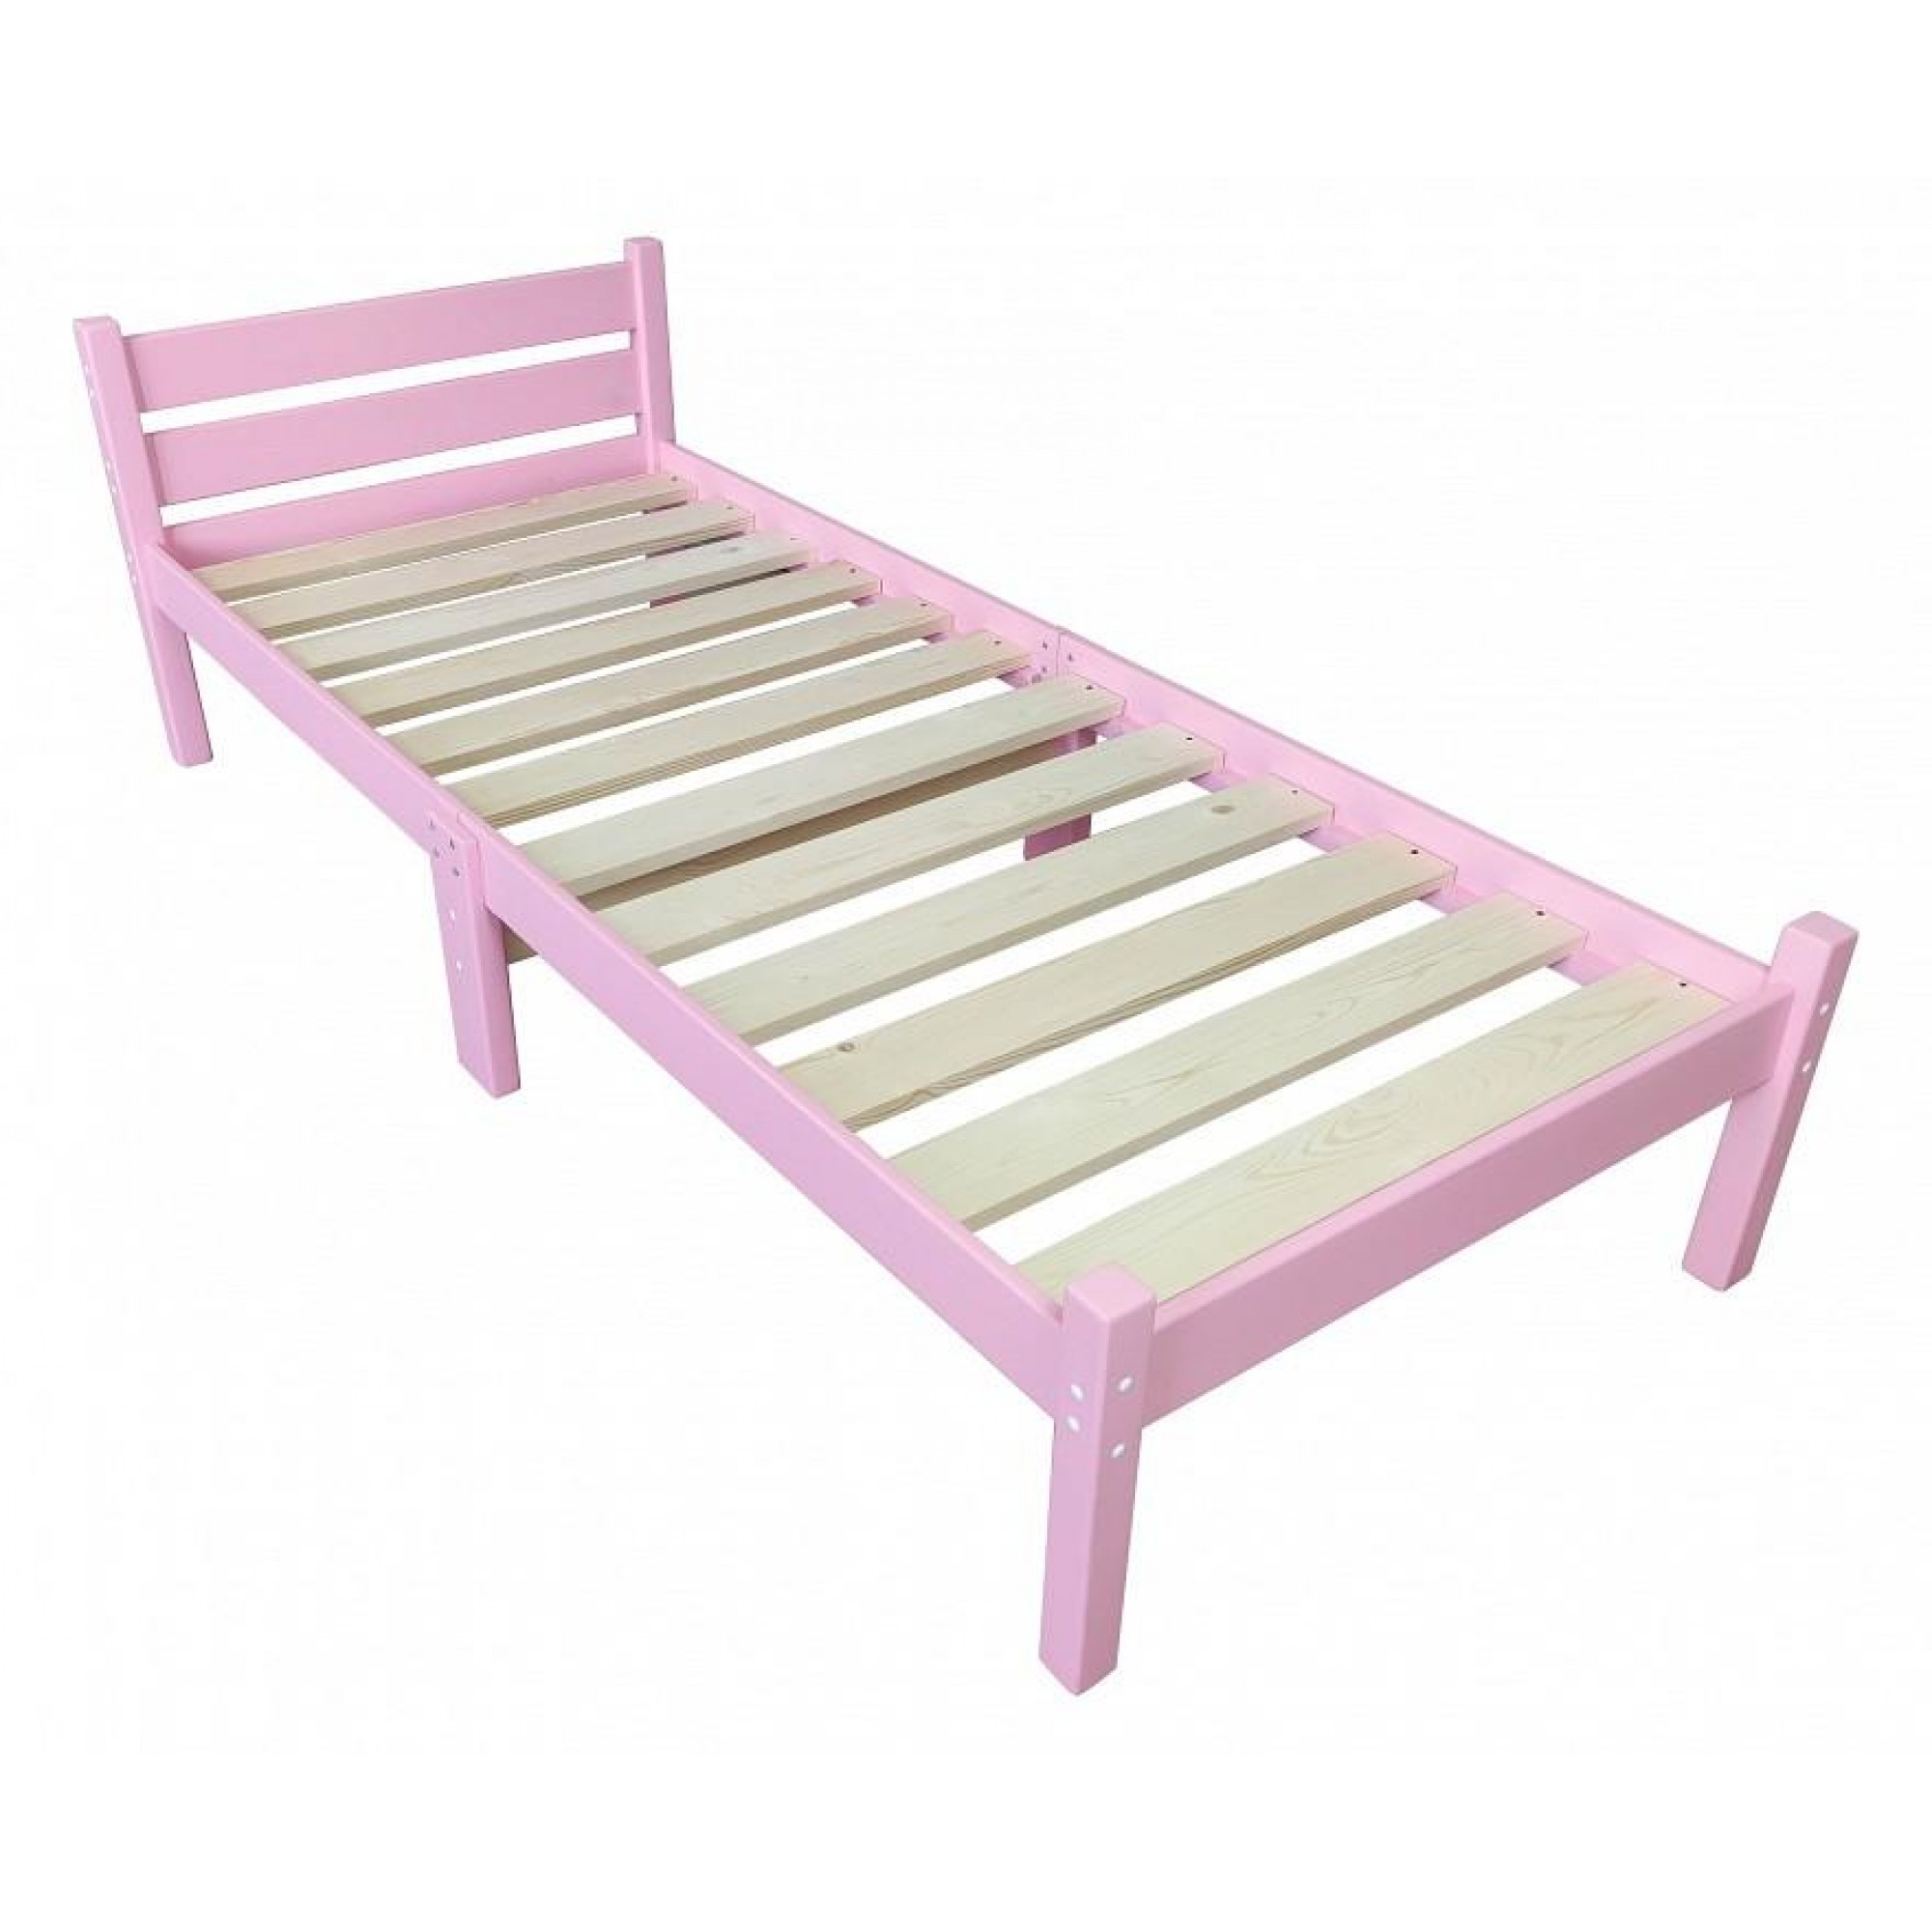 Кровать односпальная Компакт 2000x900 розовый    SLR_kompakt90roz